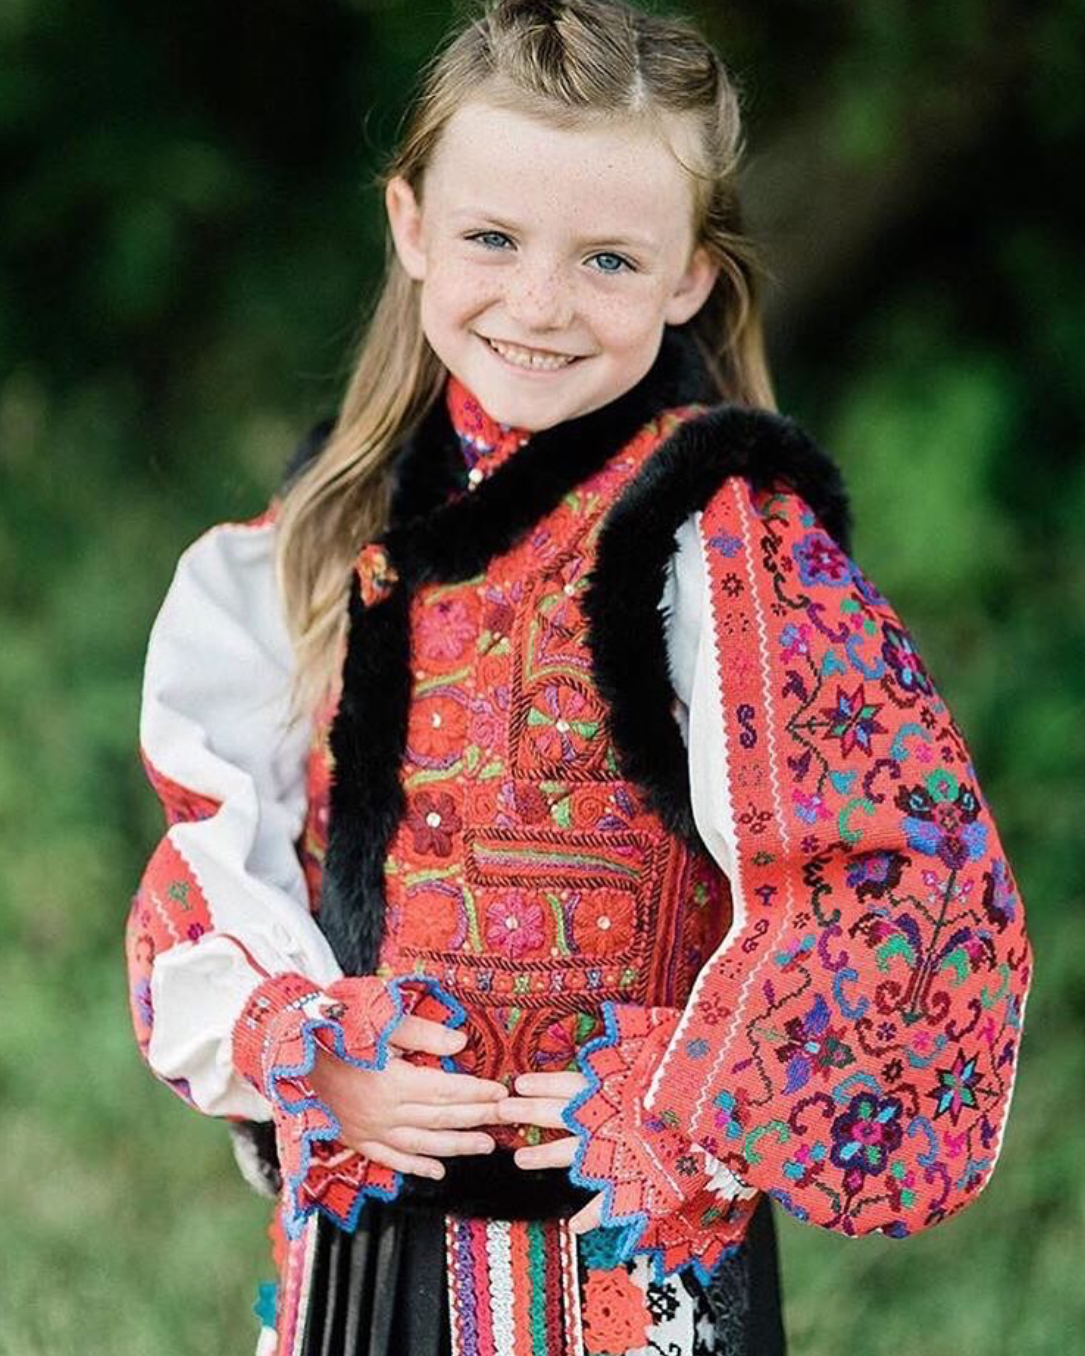 优雅迷人的罗马尼亚姑娘 可爱的小姑娘 迷人的笑容 满满的民族风 漂亮